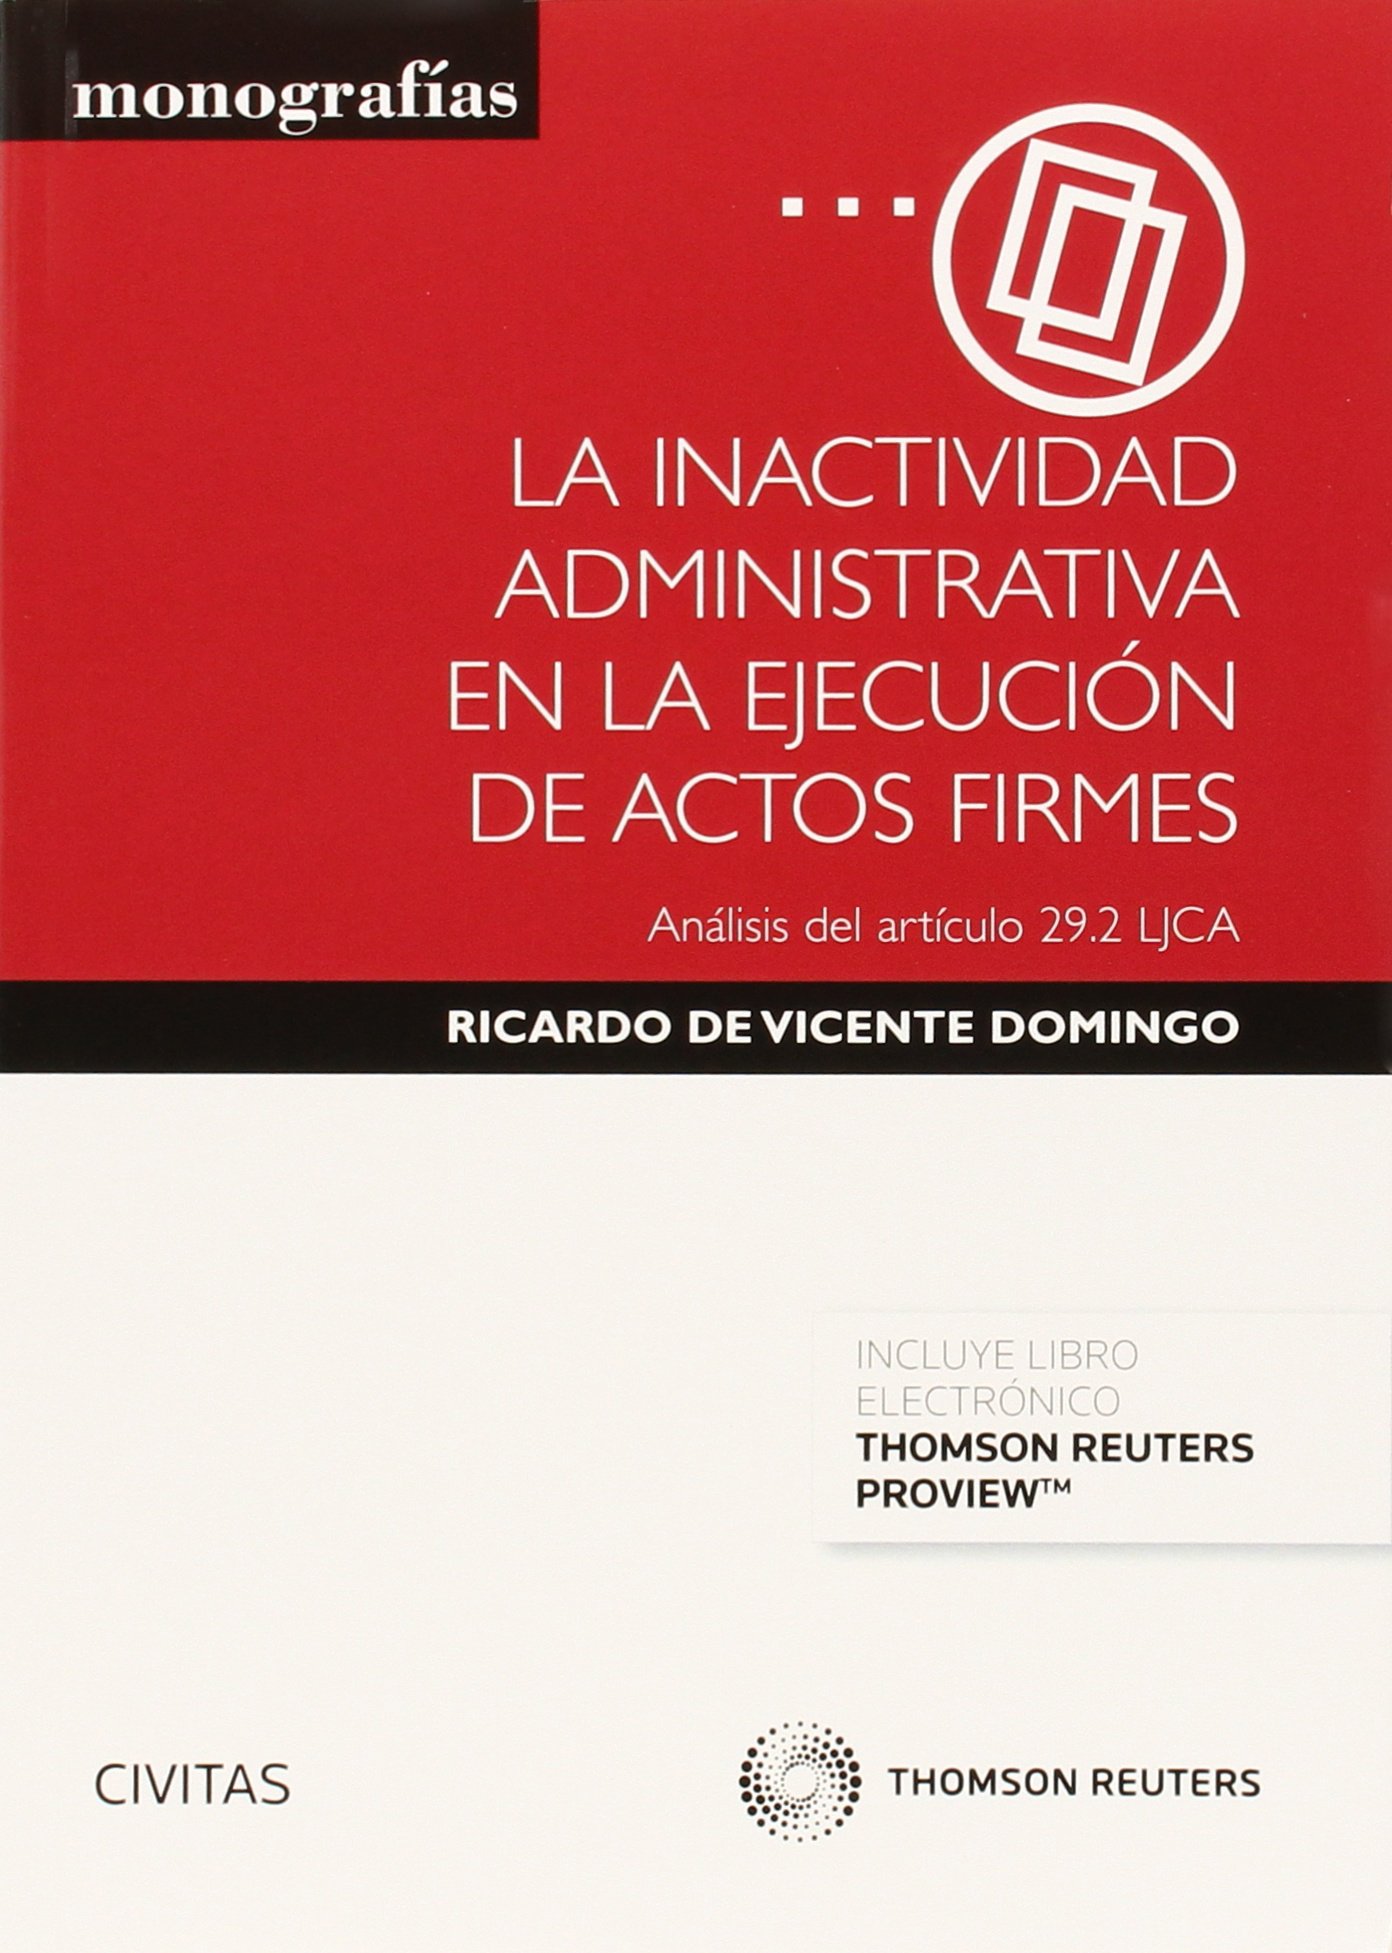 Ricardo de Vicente Domingo, es Profesor Titular de Derecho Administrativo de la Universidad de Valencia y abogado en ejercicio en materias contencioso-administrativas (desde 1996).